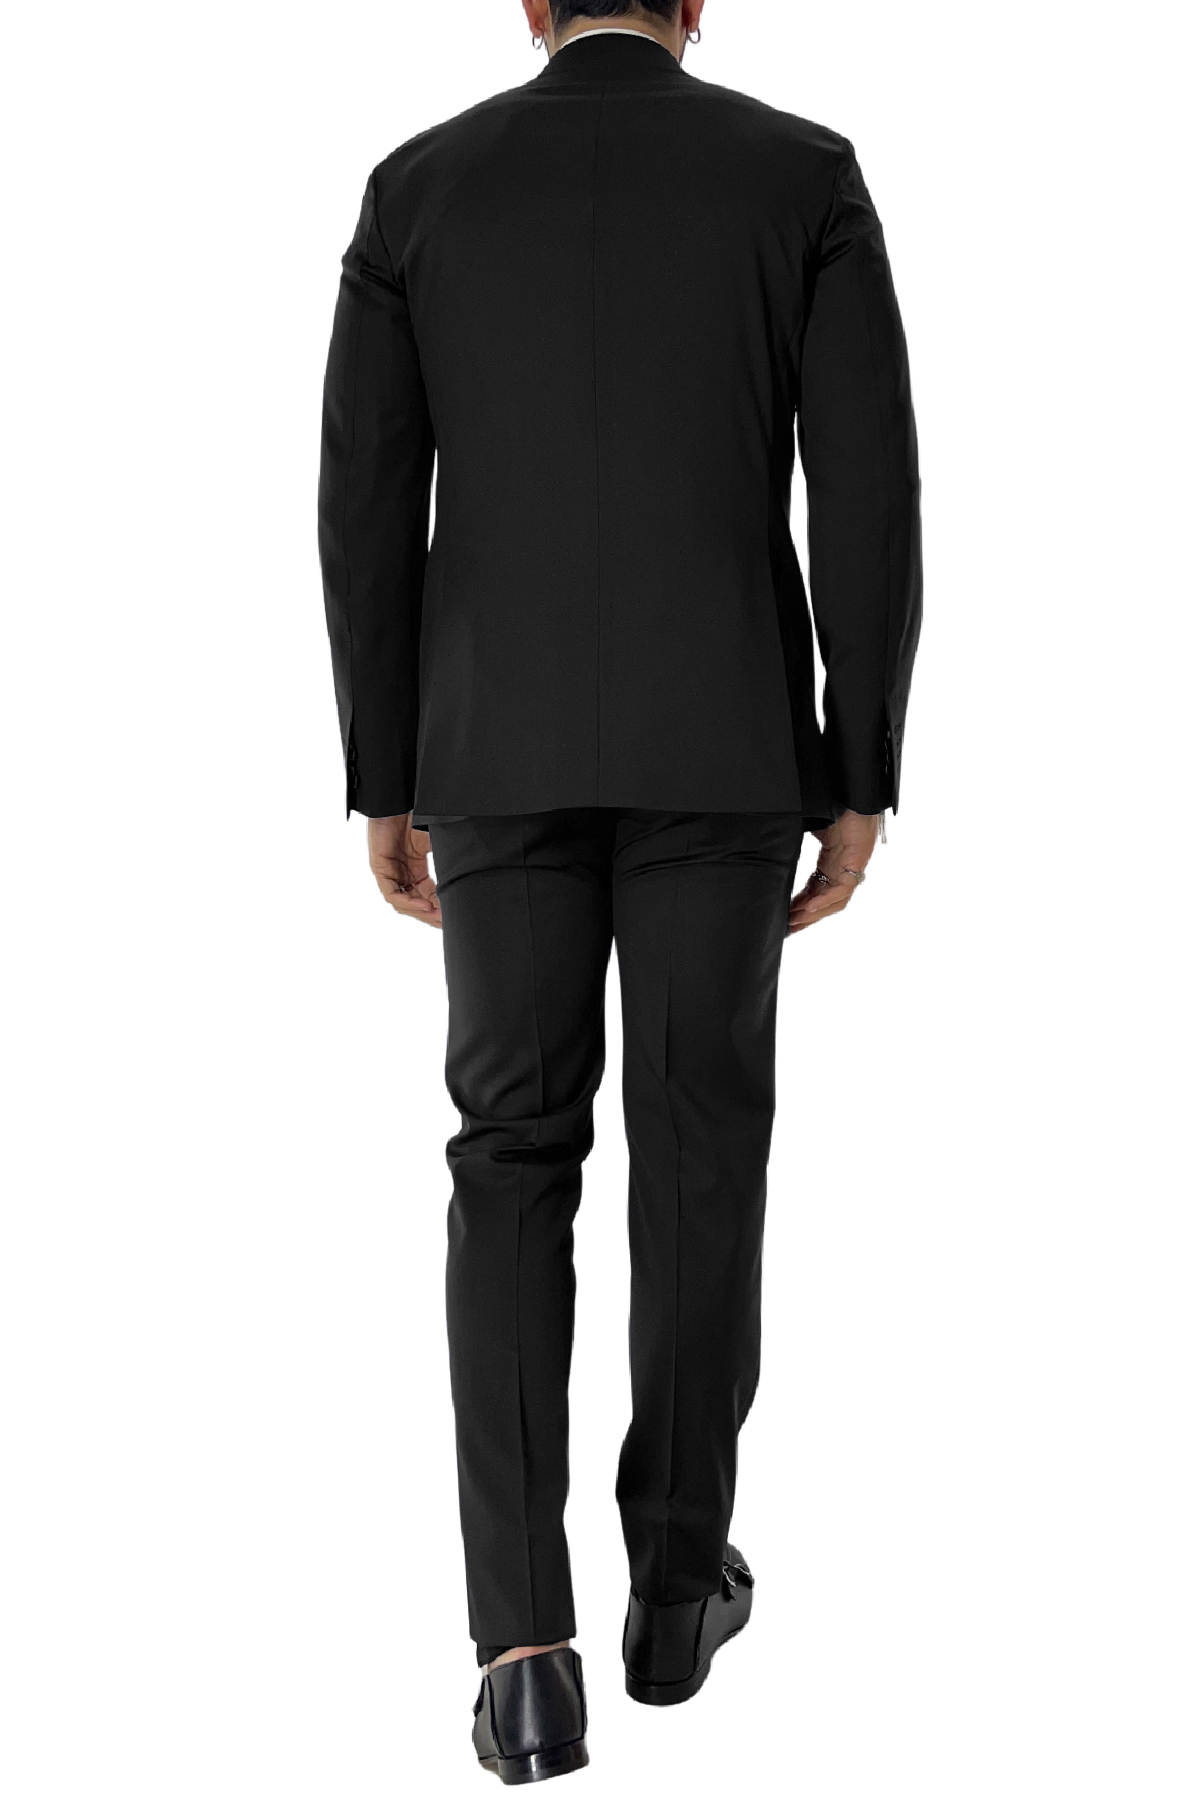 Abito uomo con giacca monopetto nera rever a lancia e pantalone tasca america in fresco lana 100% Vitale Barberis Canonico